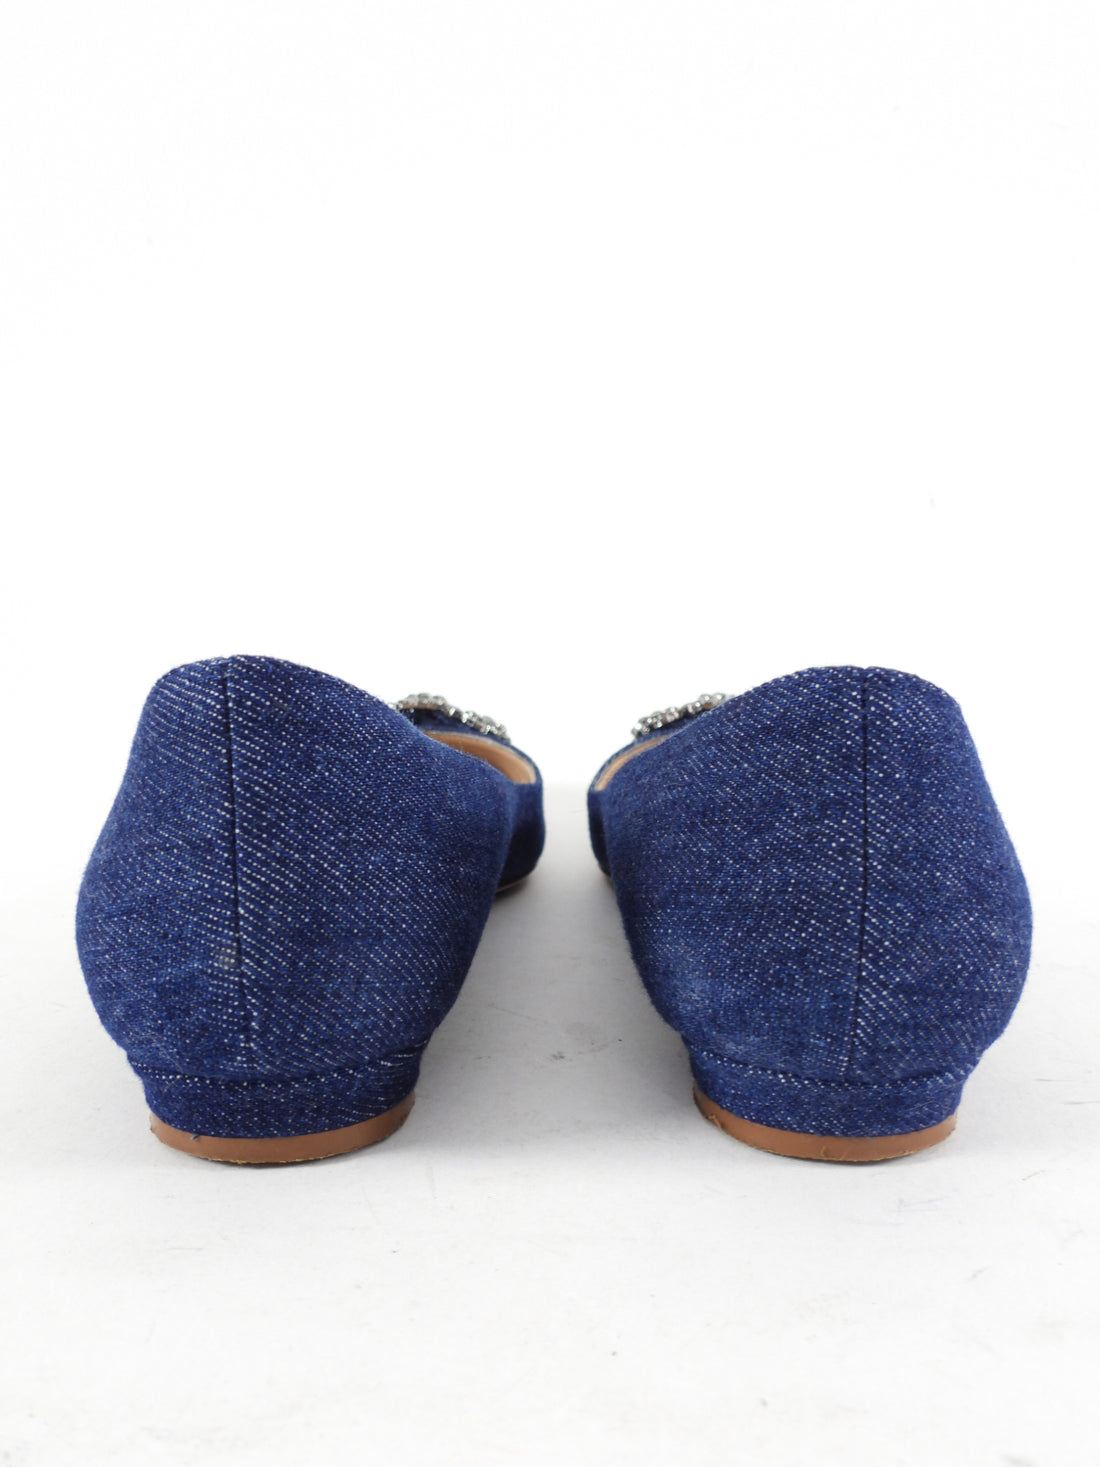 Manolo Blahnik Blue Denim Hangisi Flat Shoes - 37.5